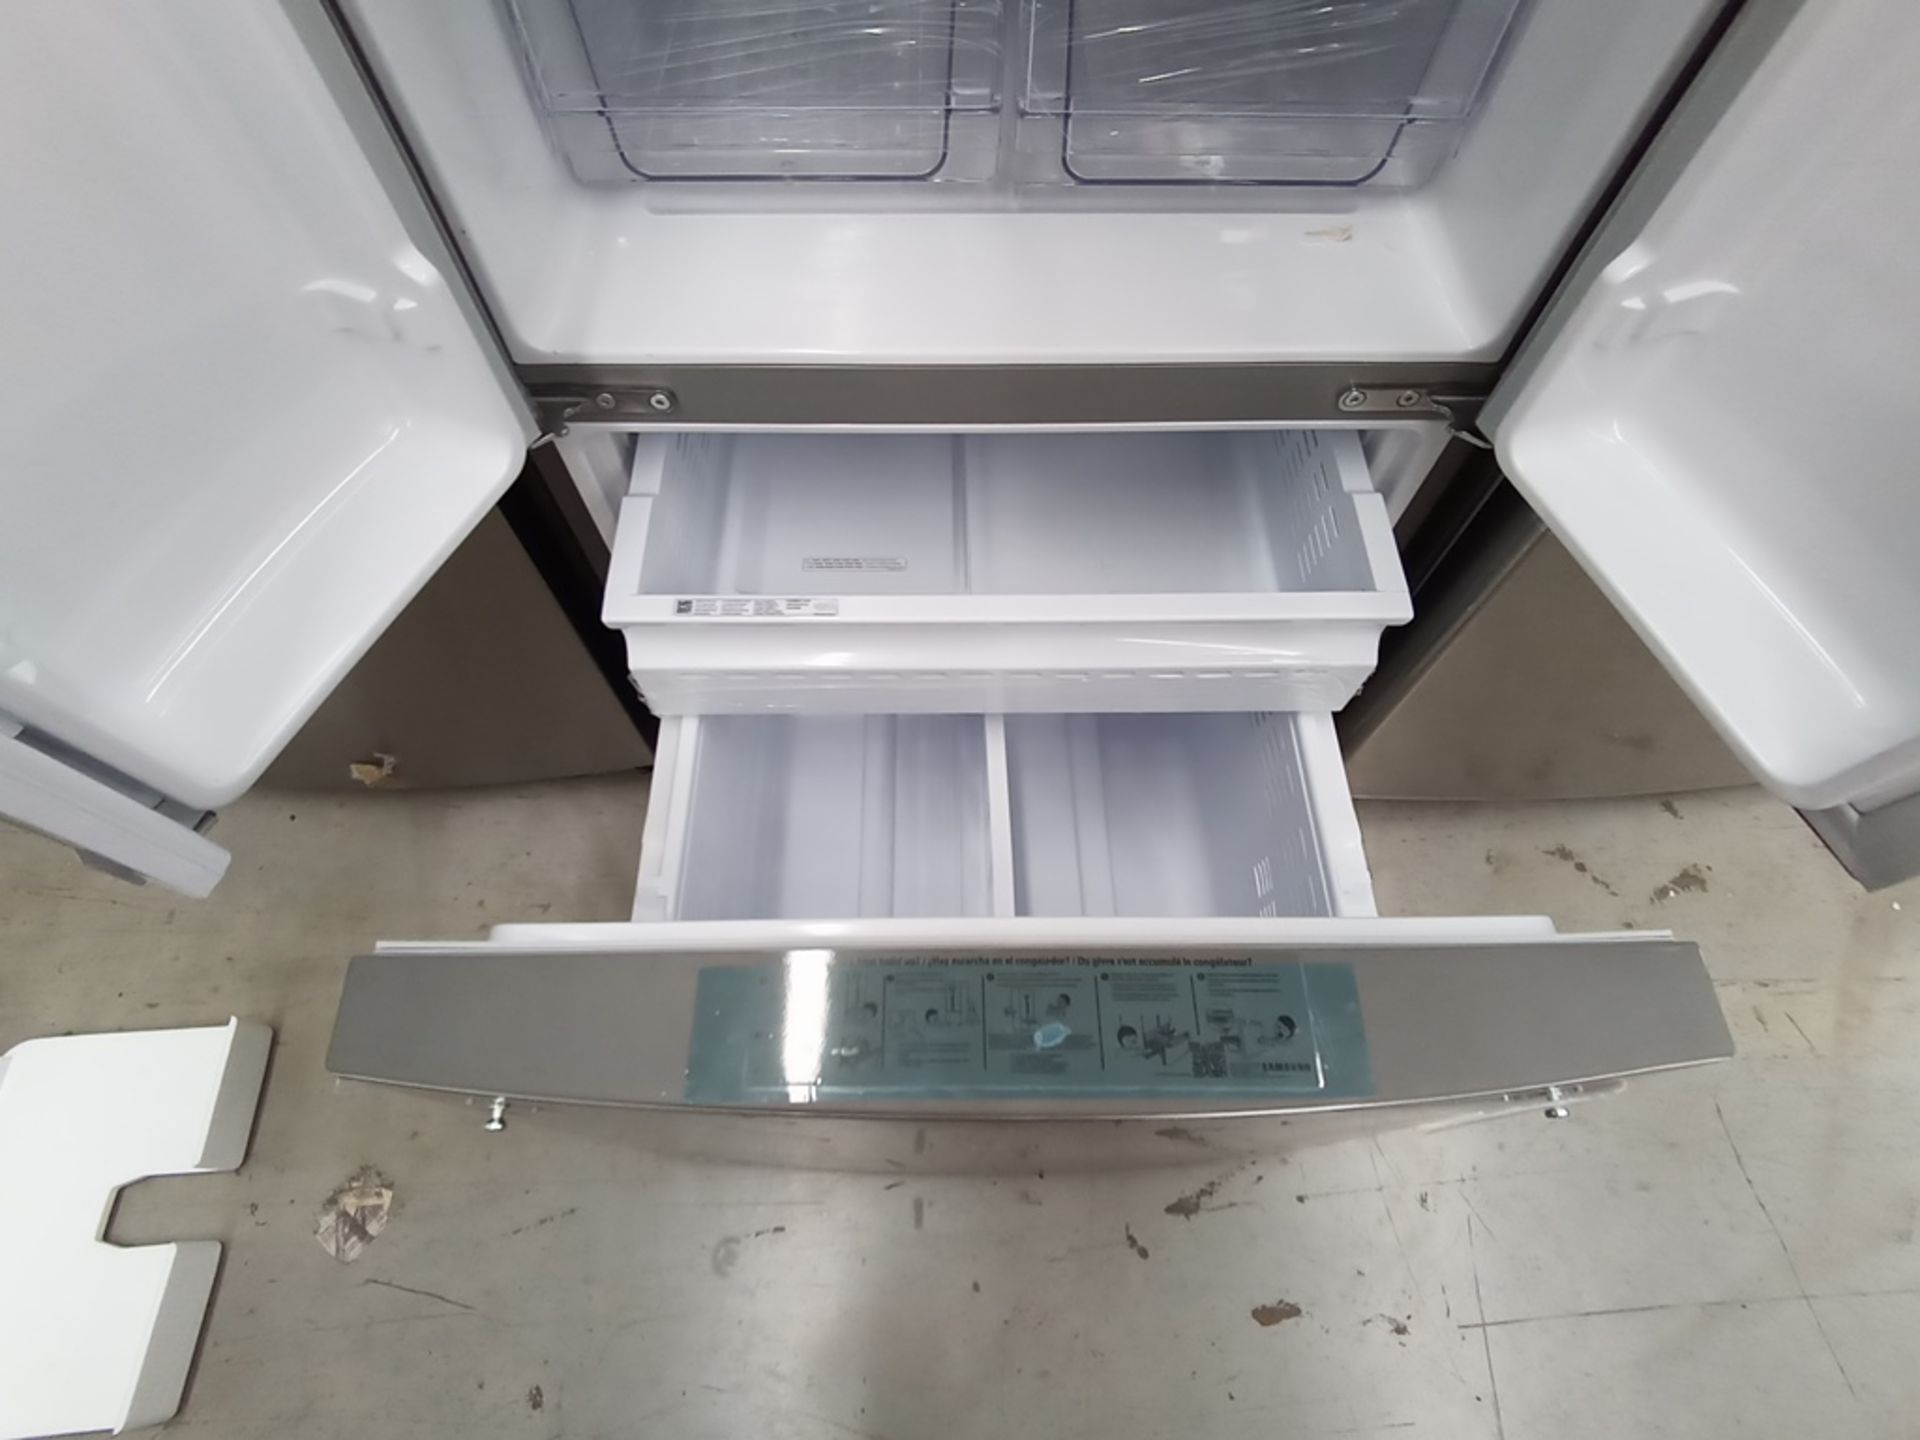 Lote de 2 refrigeradores contiene: 1 Refrigerador Marca LG, Modelo GF22BGSK, Serie 107MRMD4S595, Co - Image 14 of 16